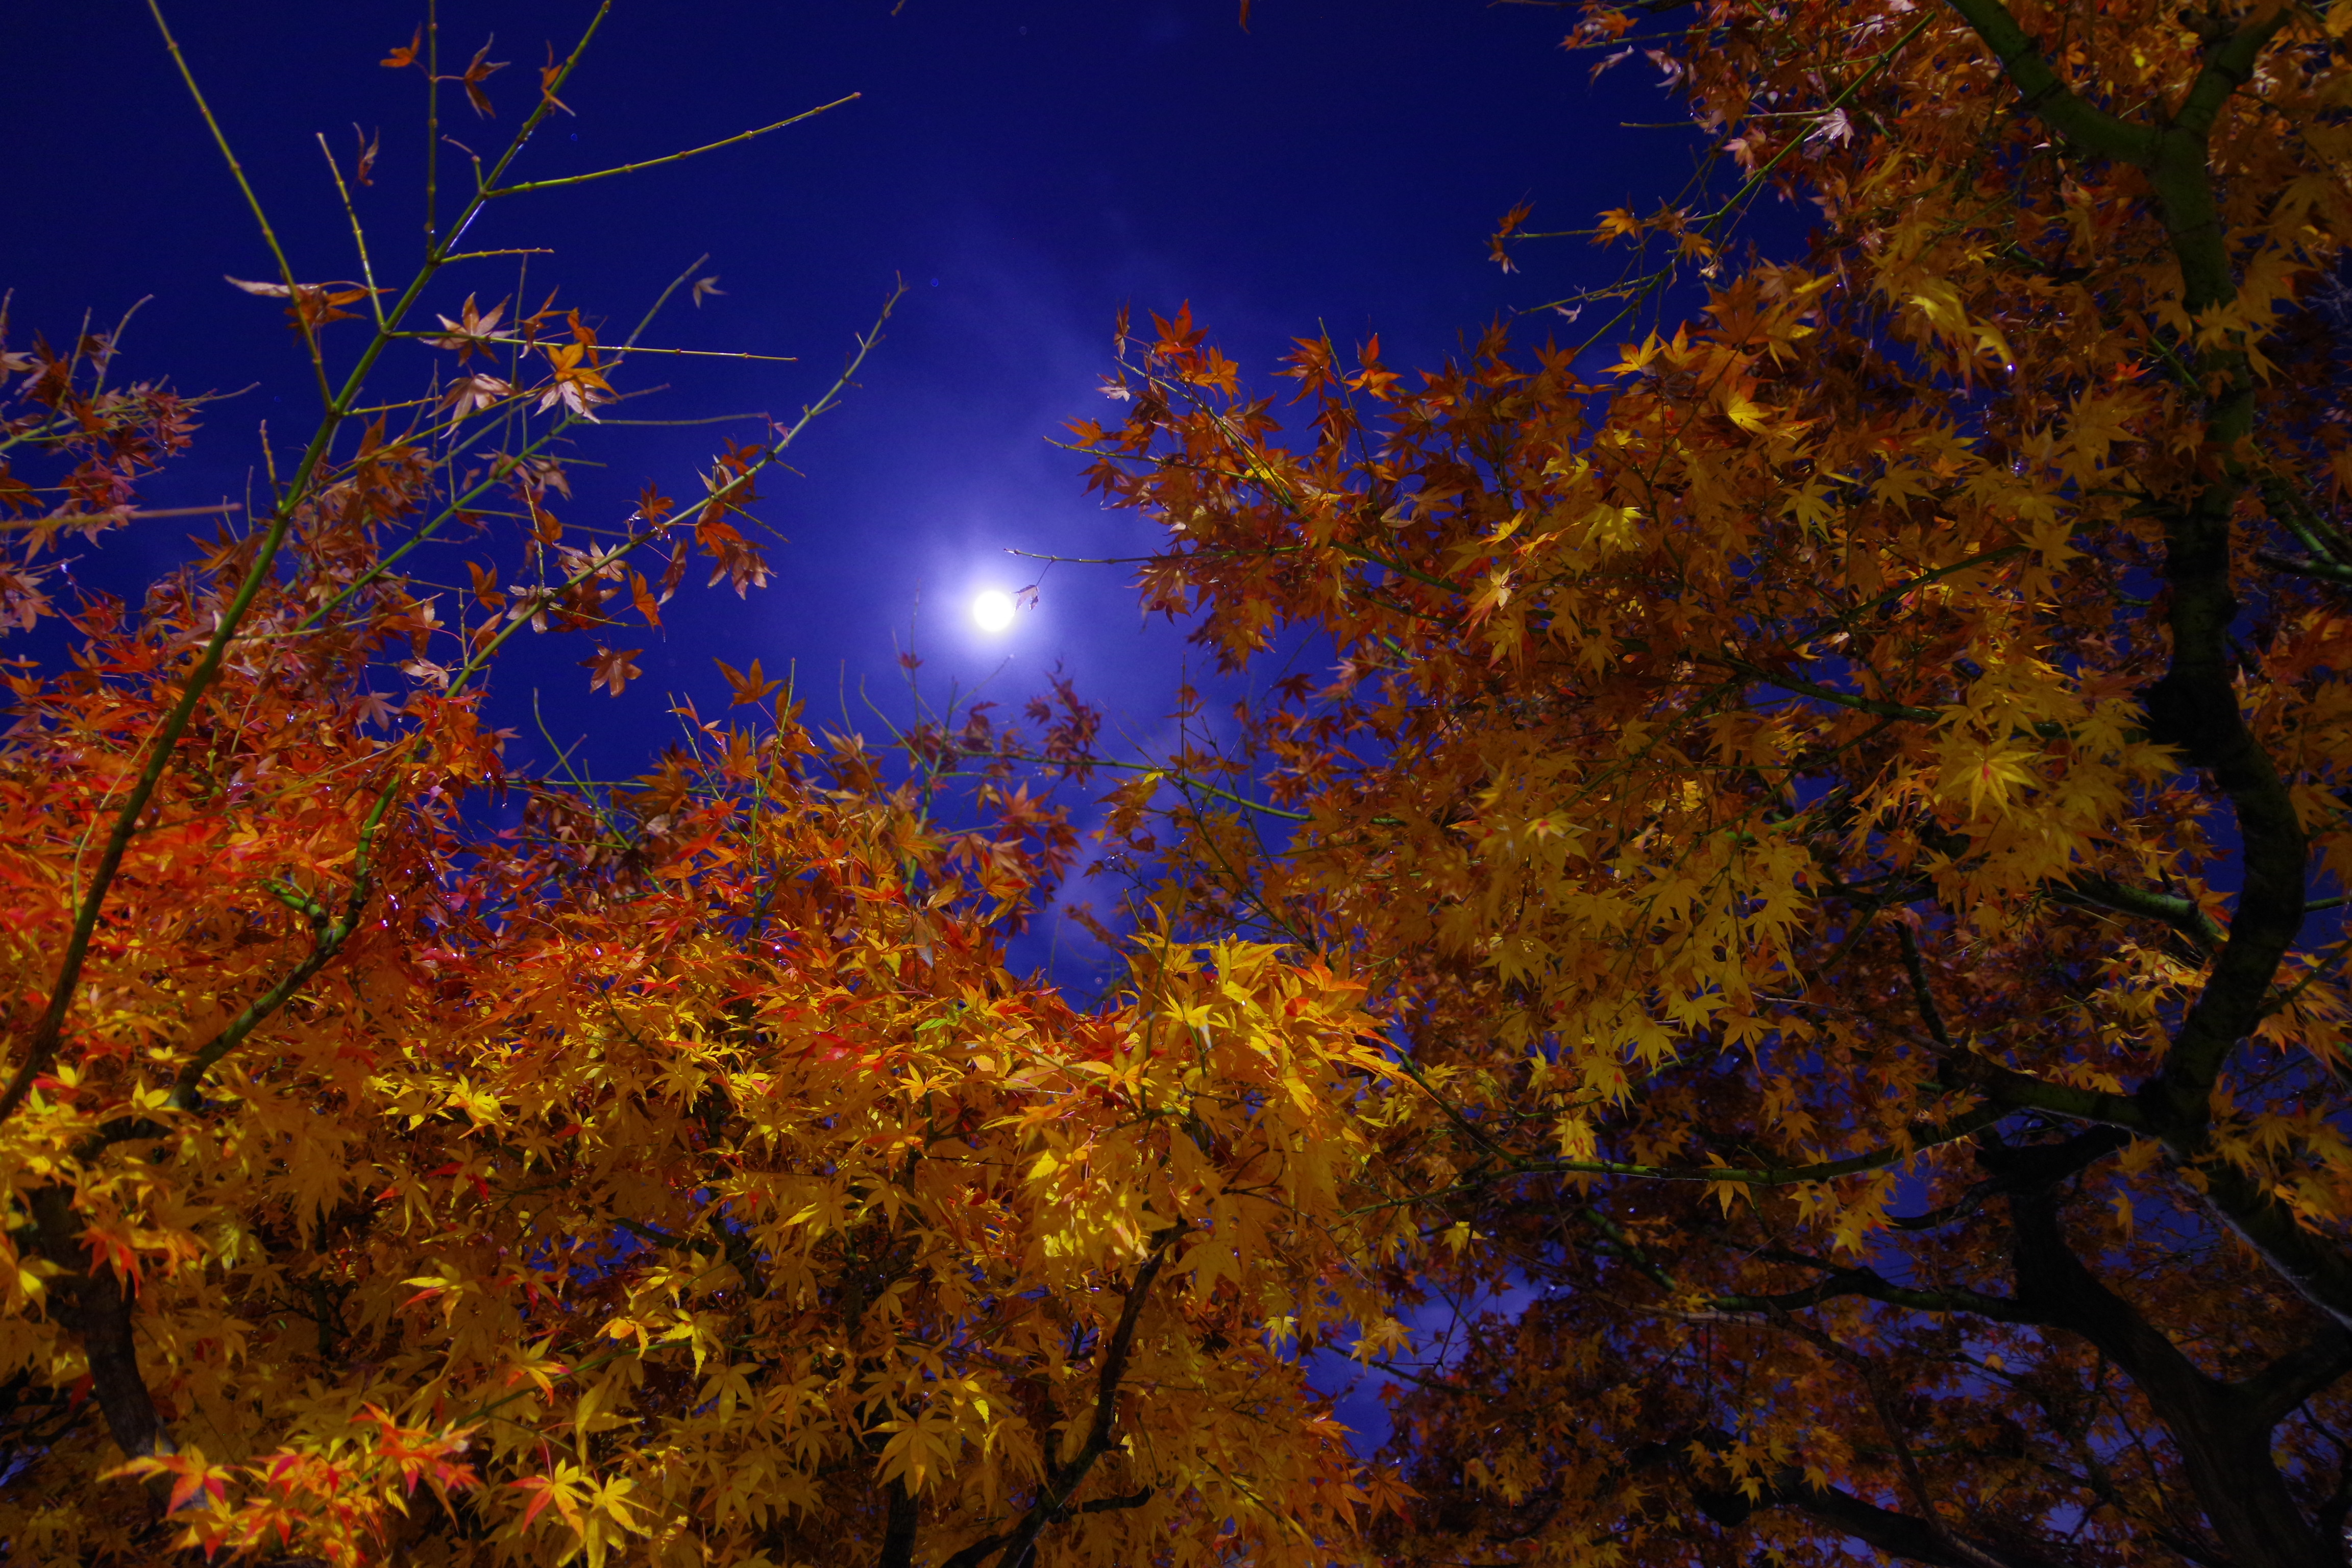 Night autumn at Autumn Night